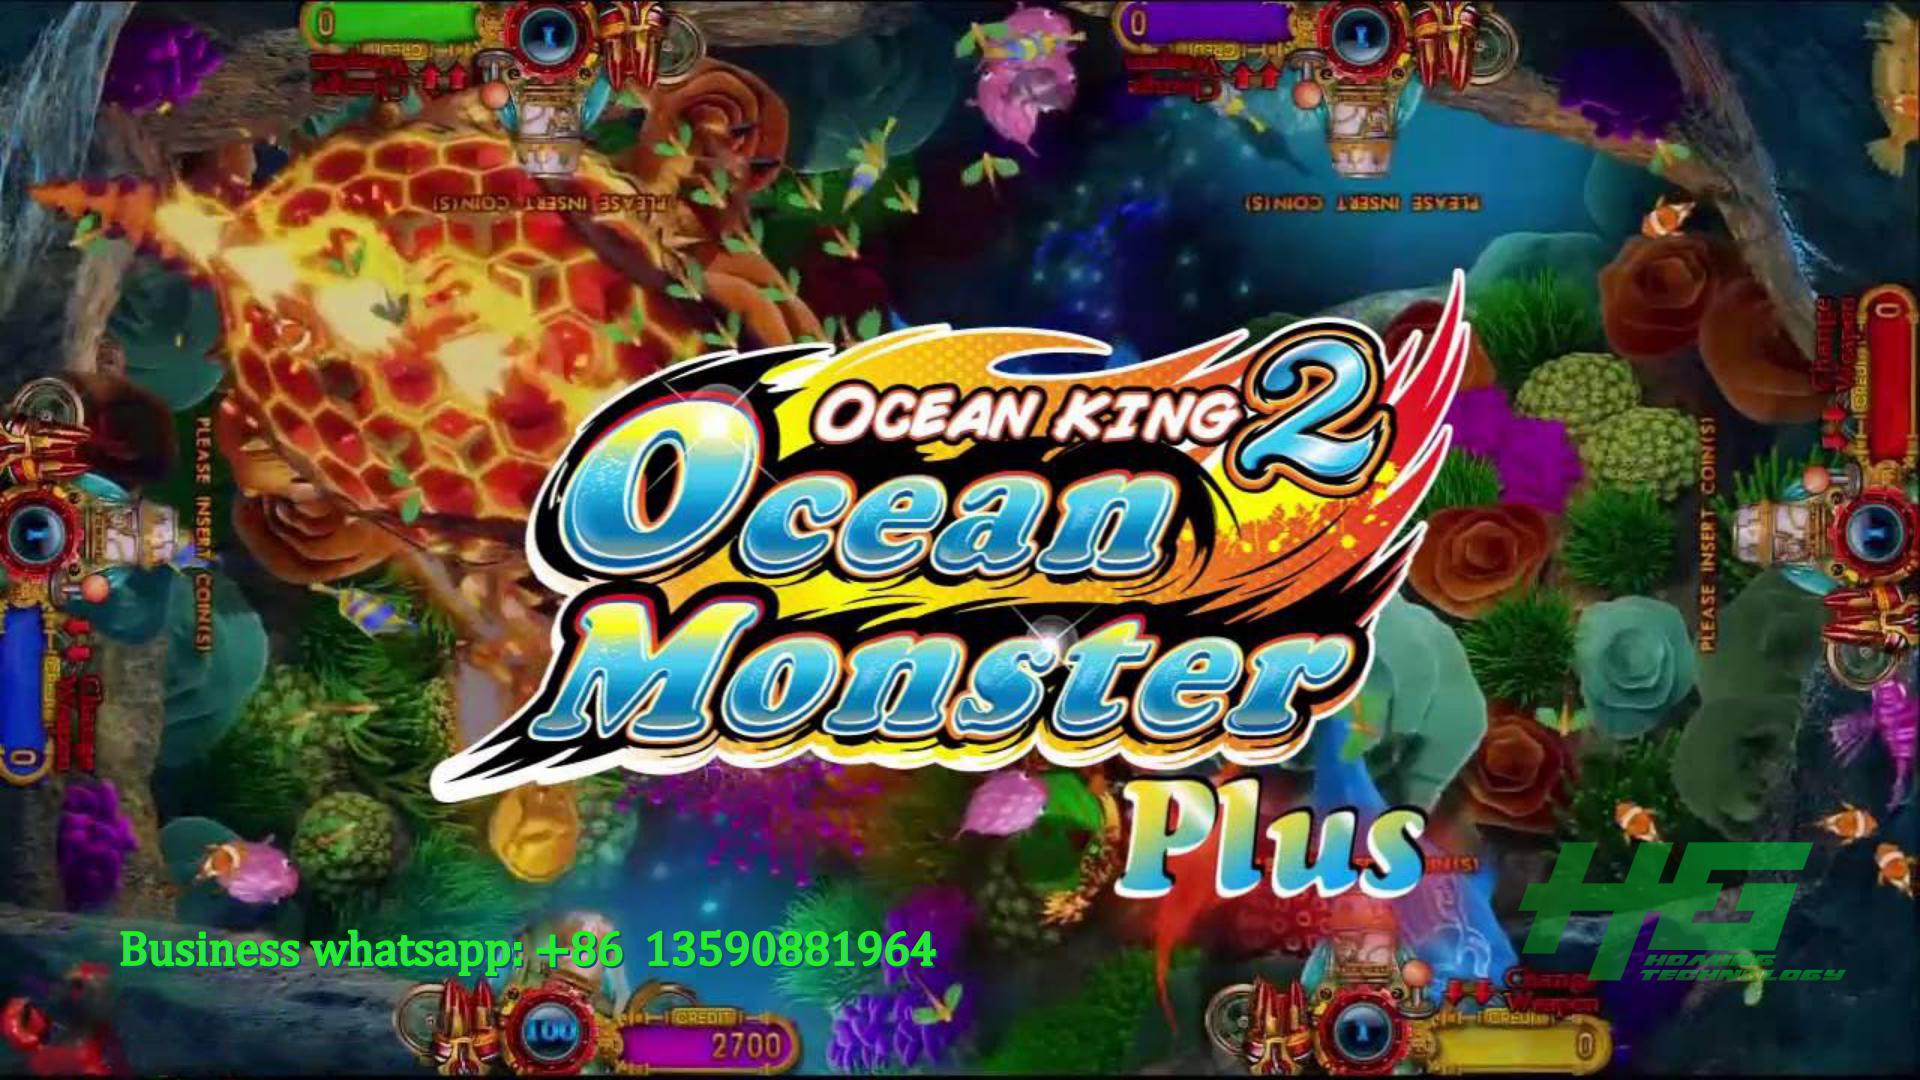 IGS Original Ocean Monster Plus Fishing Game,Ocean Monster Plus Fish Hunter Game Machine Demo